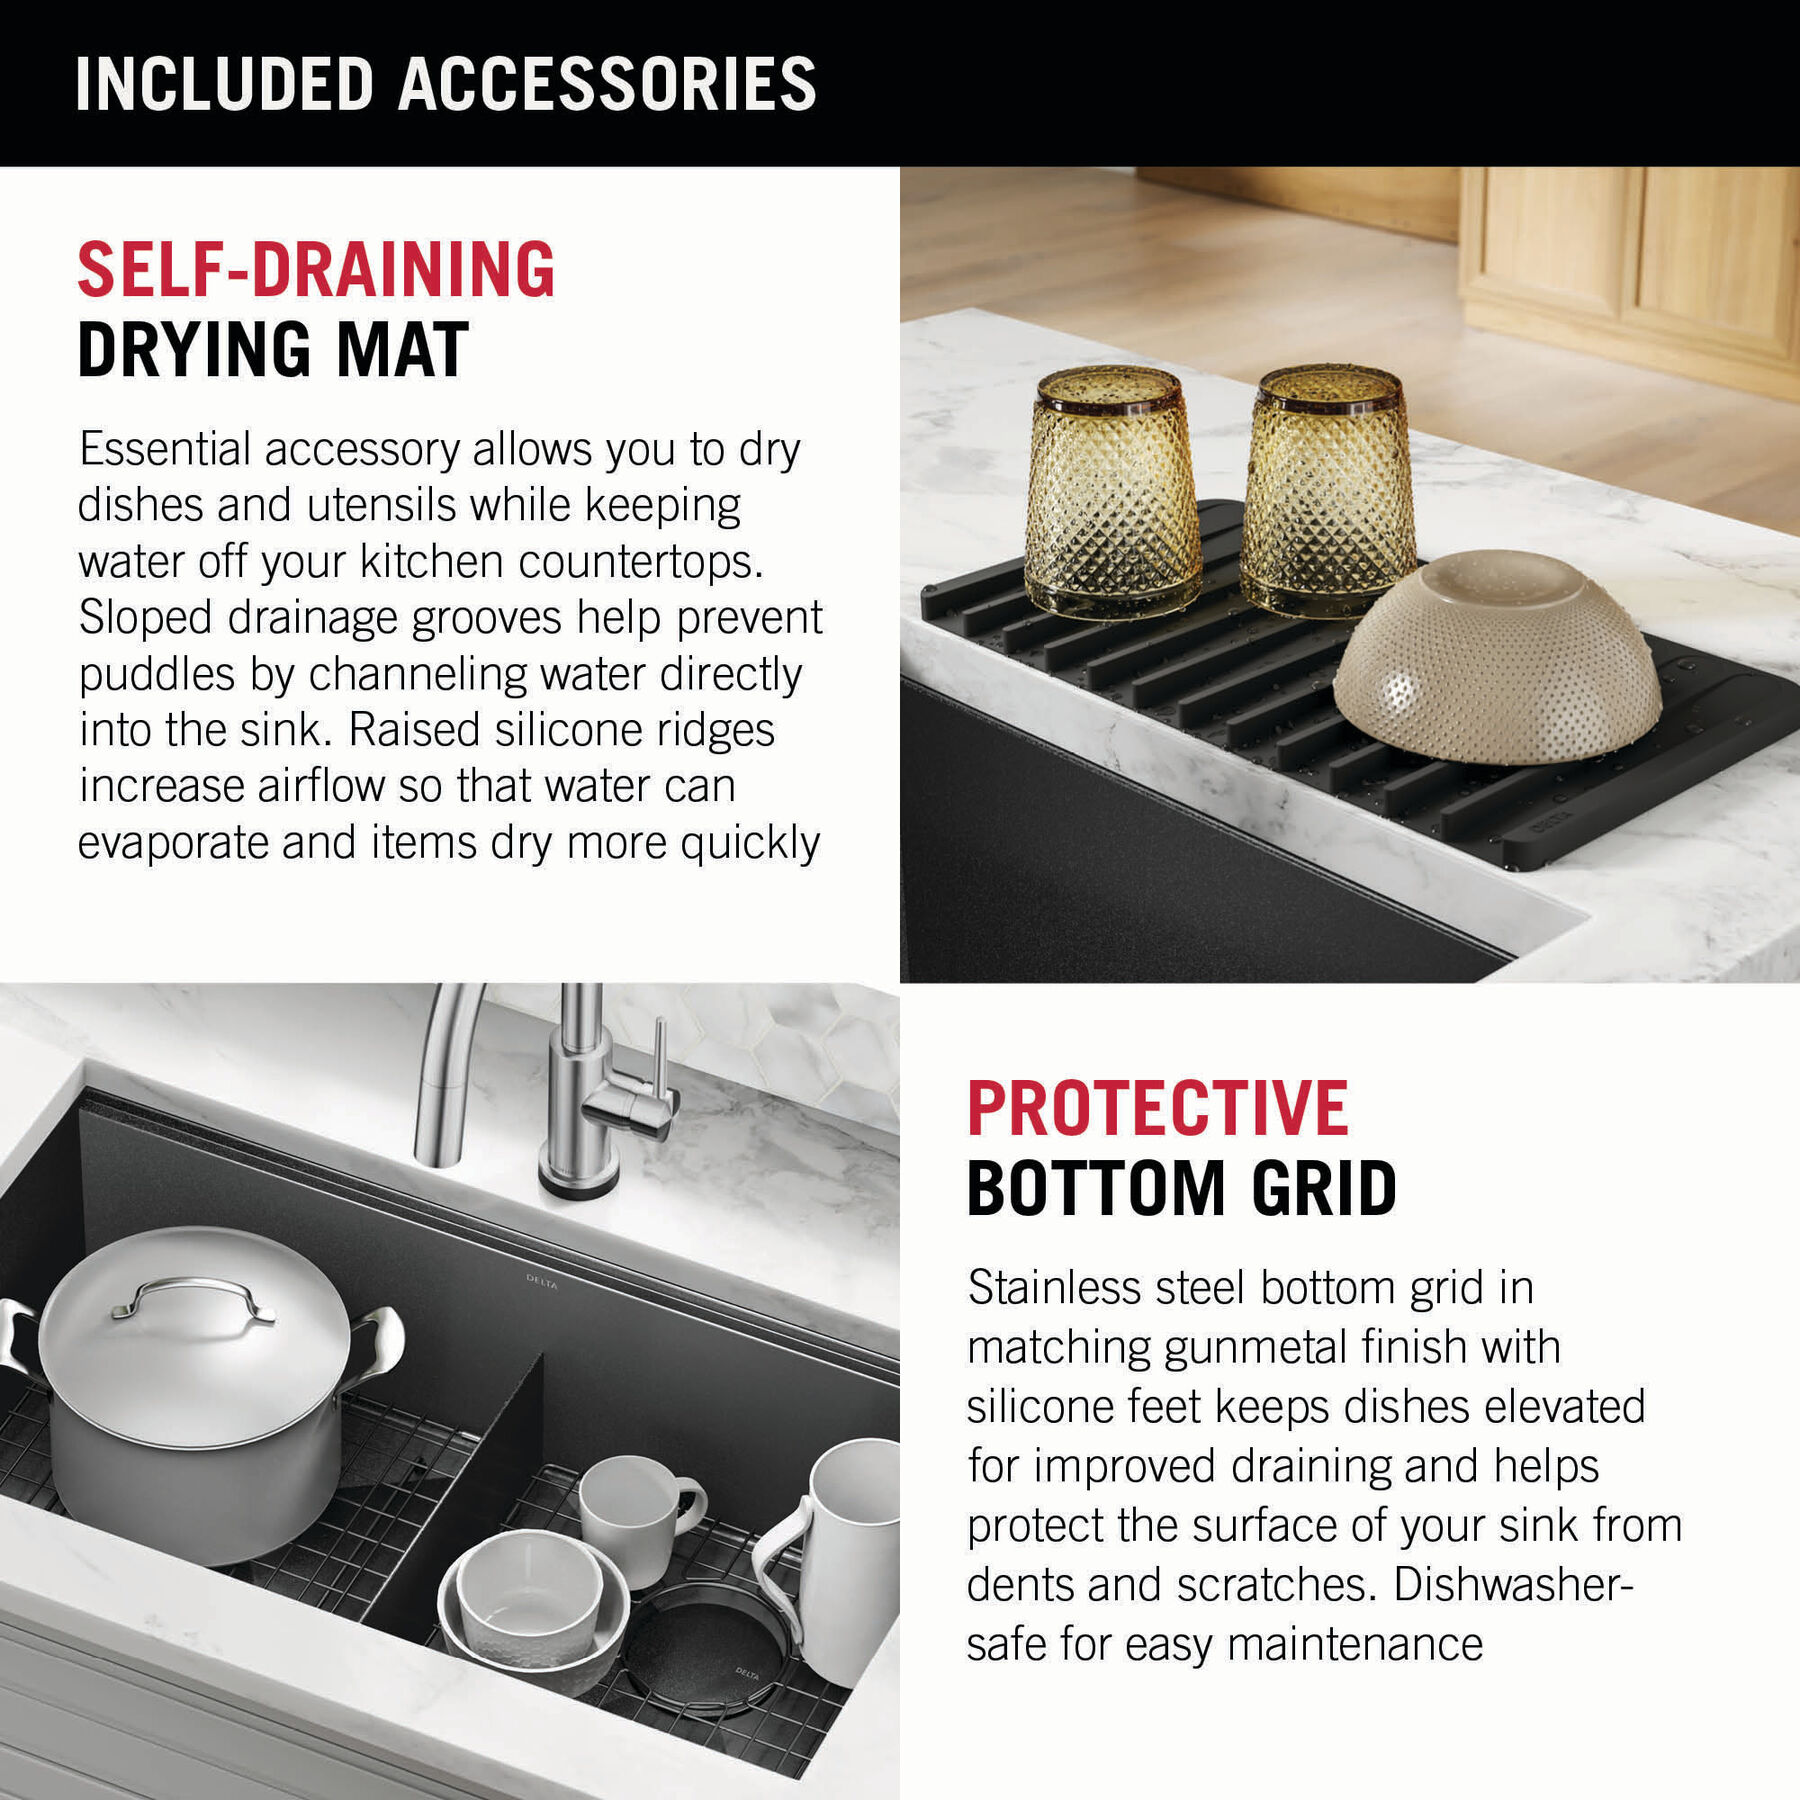 Dishwashing Tools: Microfiber Dish Drying Mat, Gray, 18 x 12